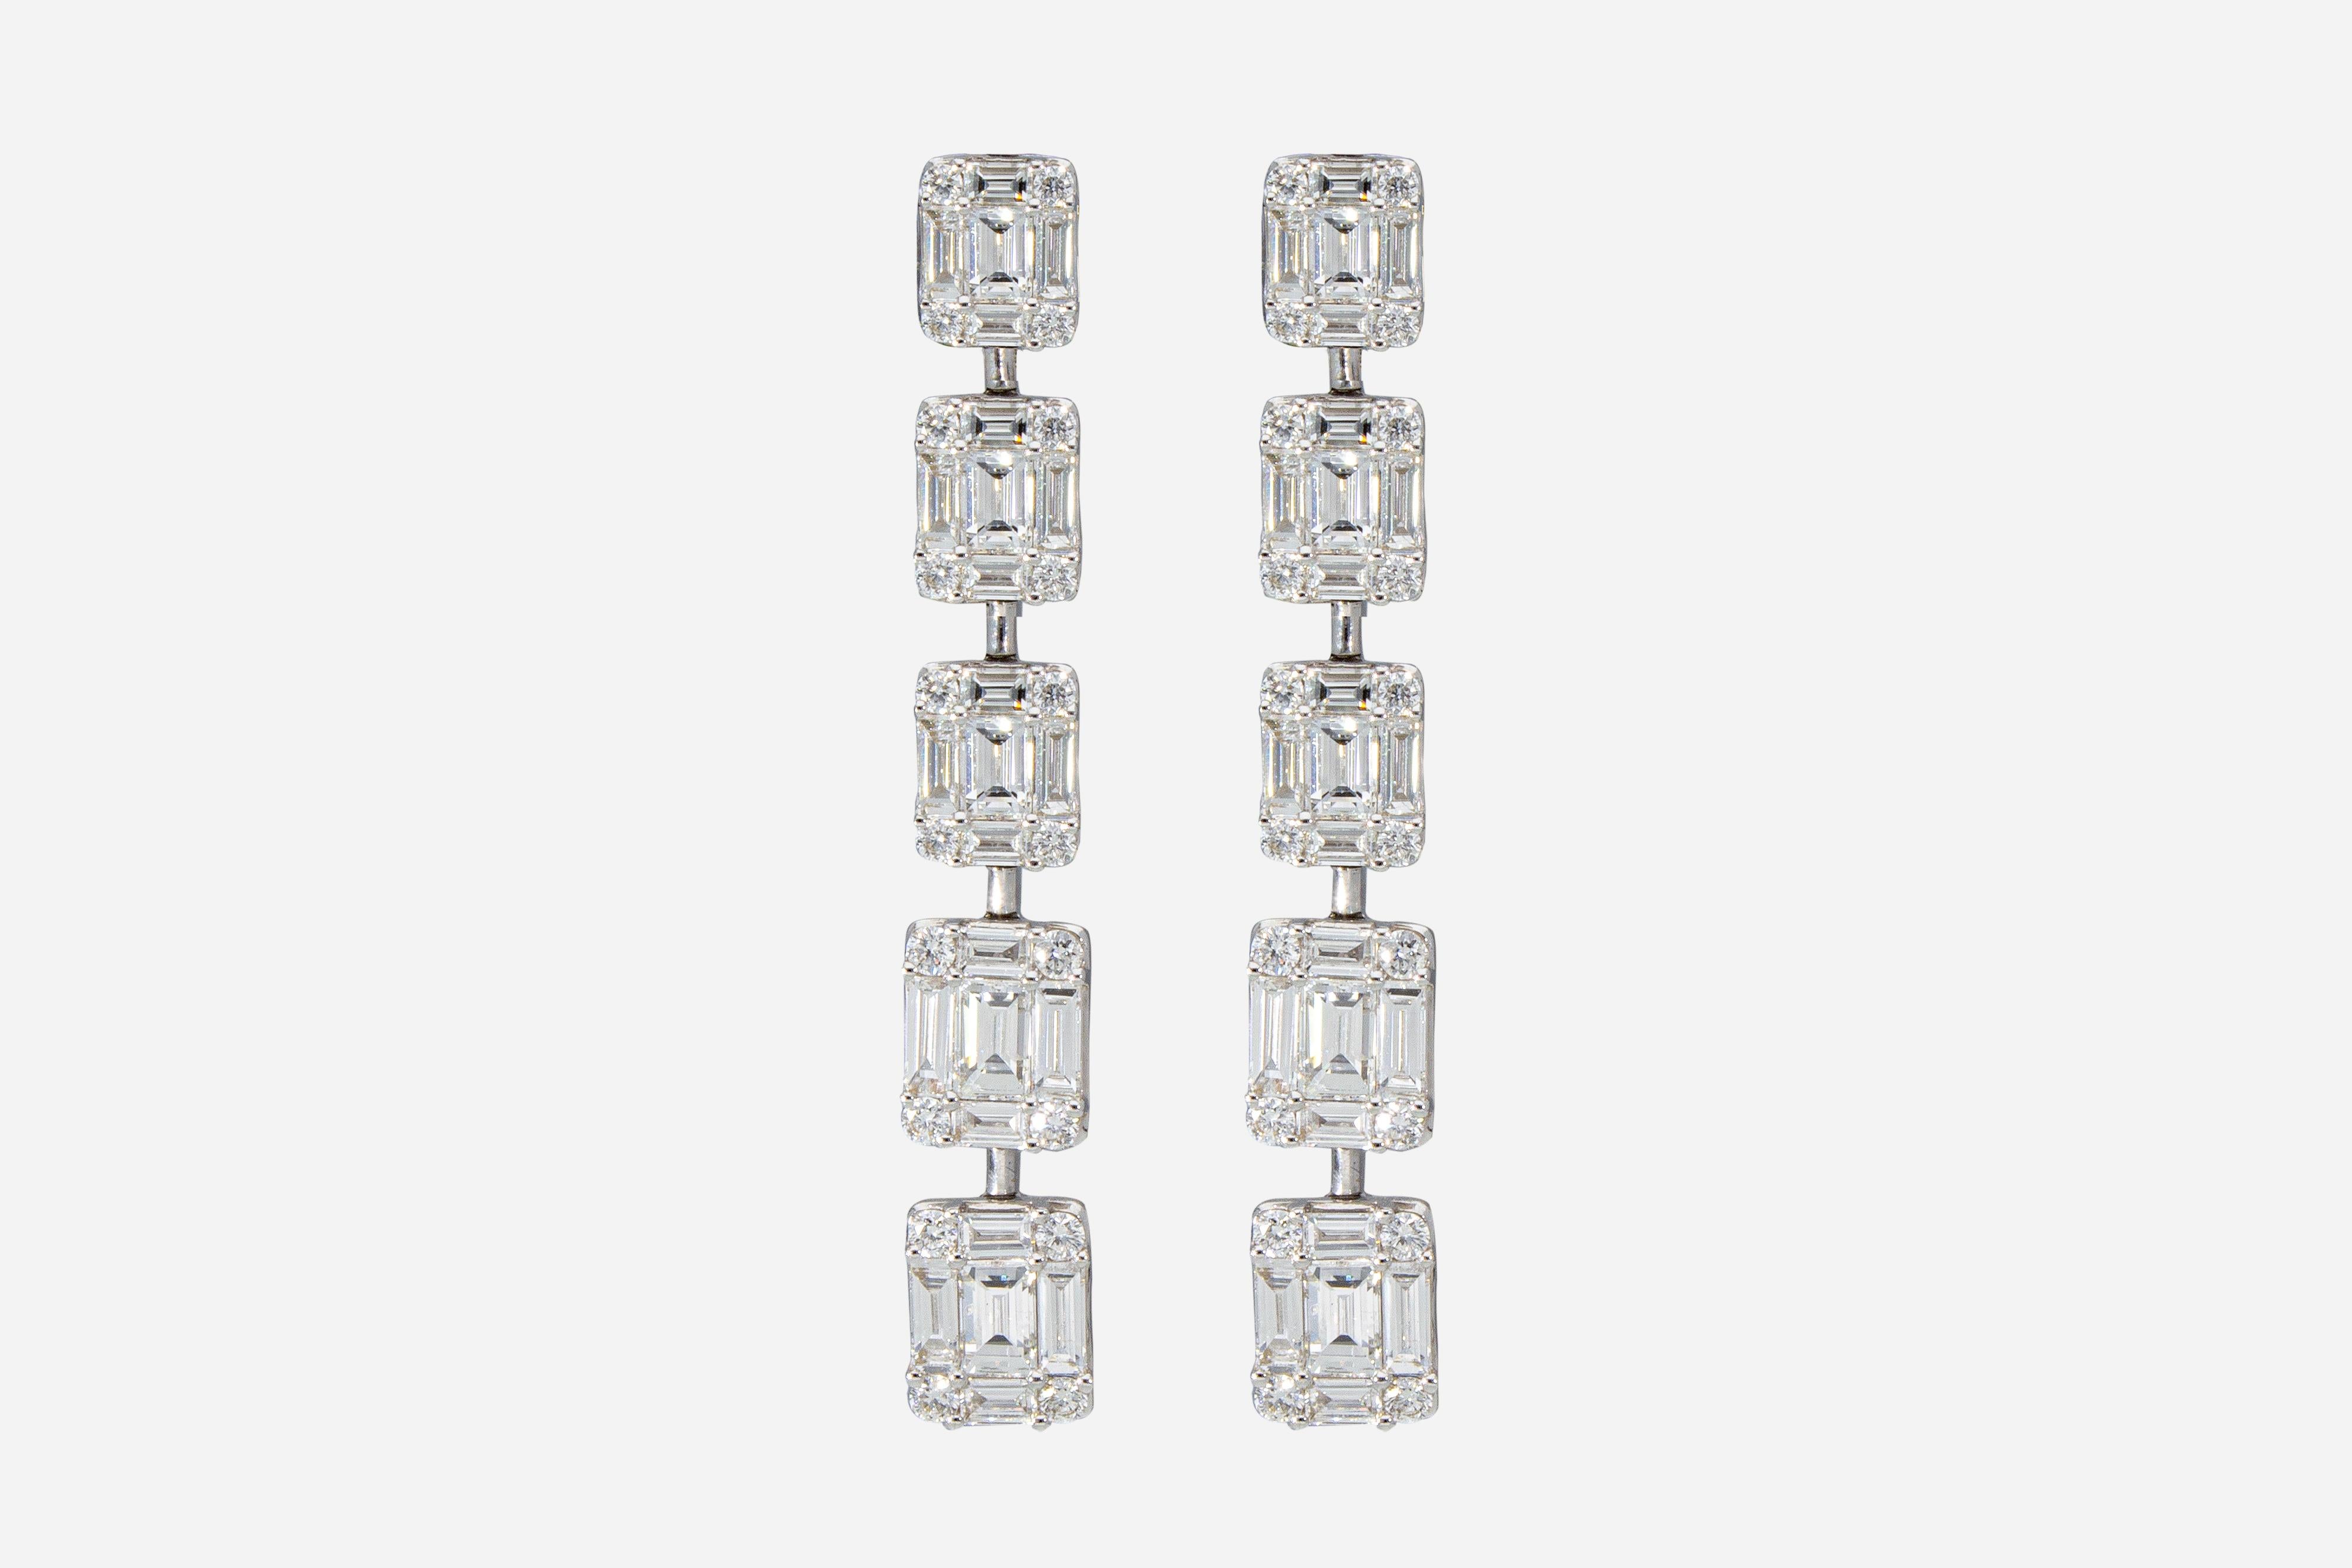 Les boucles d'oreilles sont composées de 10 éléments rectangulaires gradués. 
Chaque élément est serti de 4 diamants taille brillant et de 5 diamants taille baguette. 
Nombre total de Brilliantes : n ° 90 
Poids total en carats : 3,65 ct
Les boucles